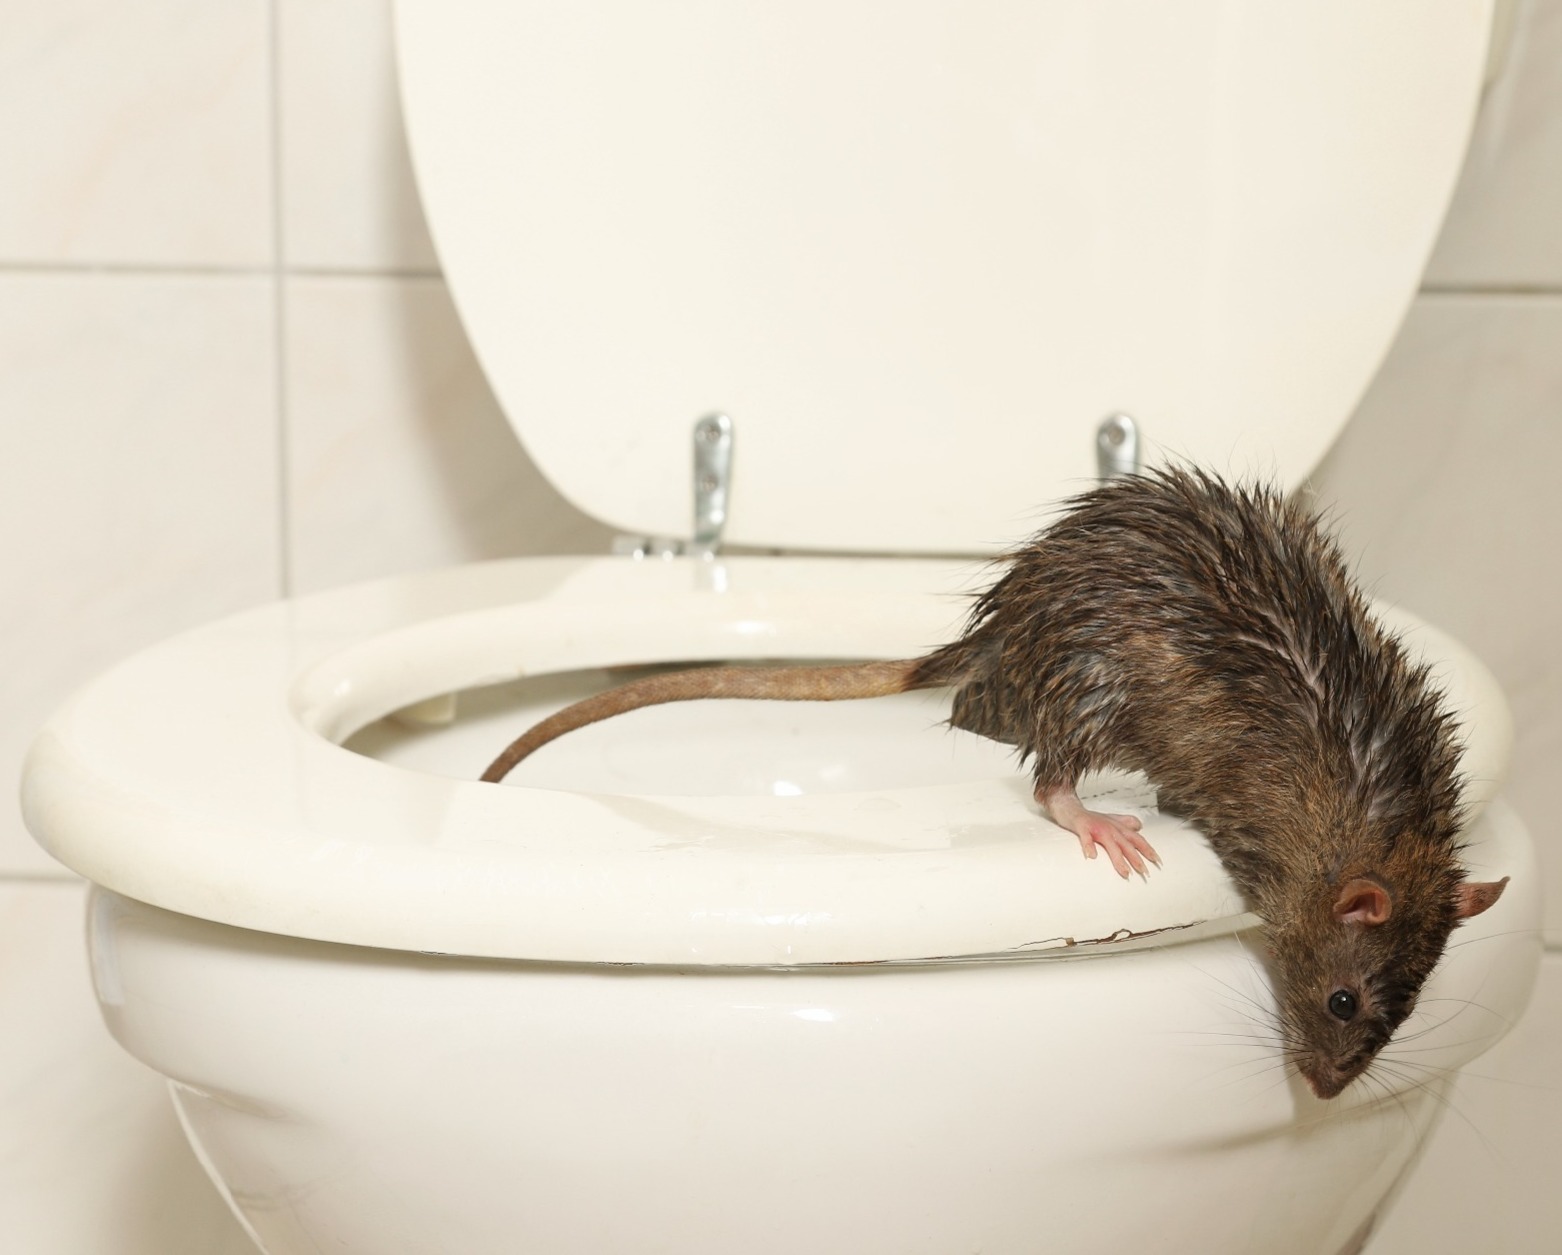 Rat on toilet